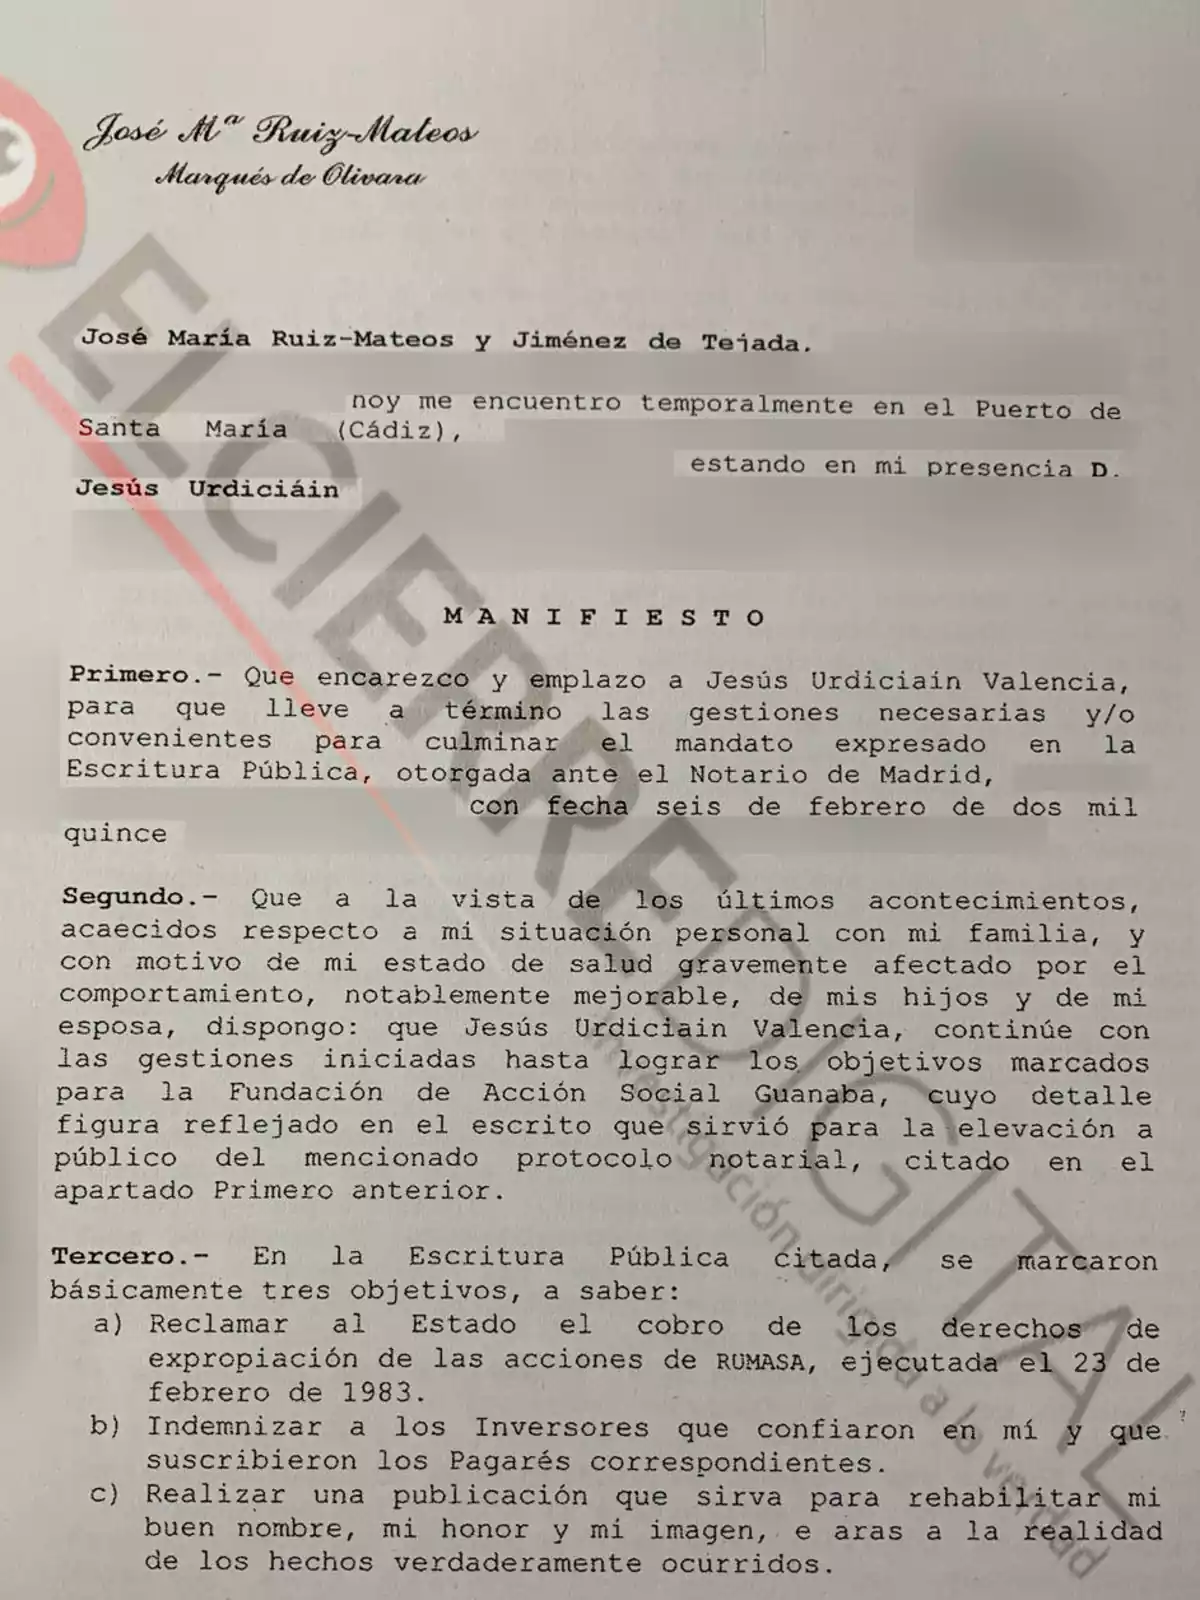 Primera página del último documento que Ruiz-Mateos firmó antes de morir en el que pide a Jesús Urdiciáin que cumpla sus últimas voluntades: pedir al Estado español la indemnización por la expropiación de Rumasa, pagar a los inversores de pagarés de Nueva Rumasa con ese dinero y restituir su imagen públicamente.